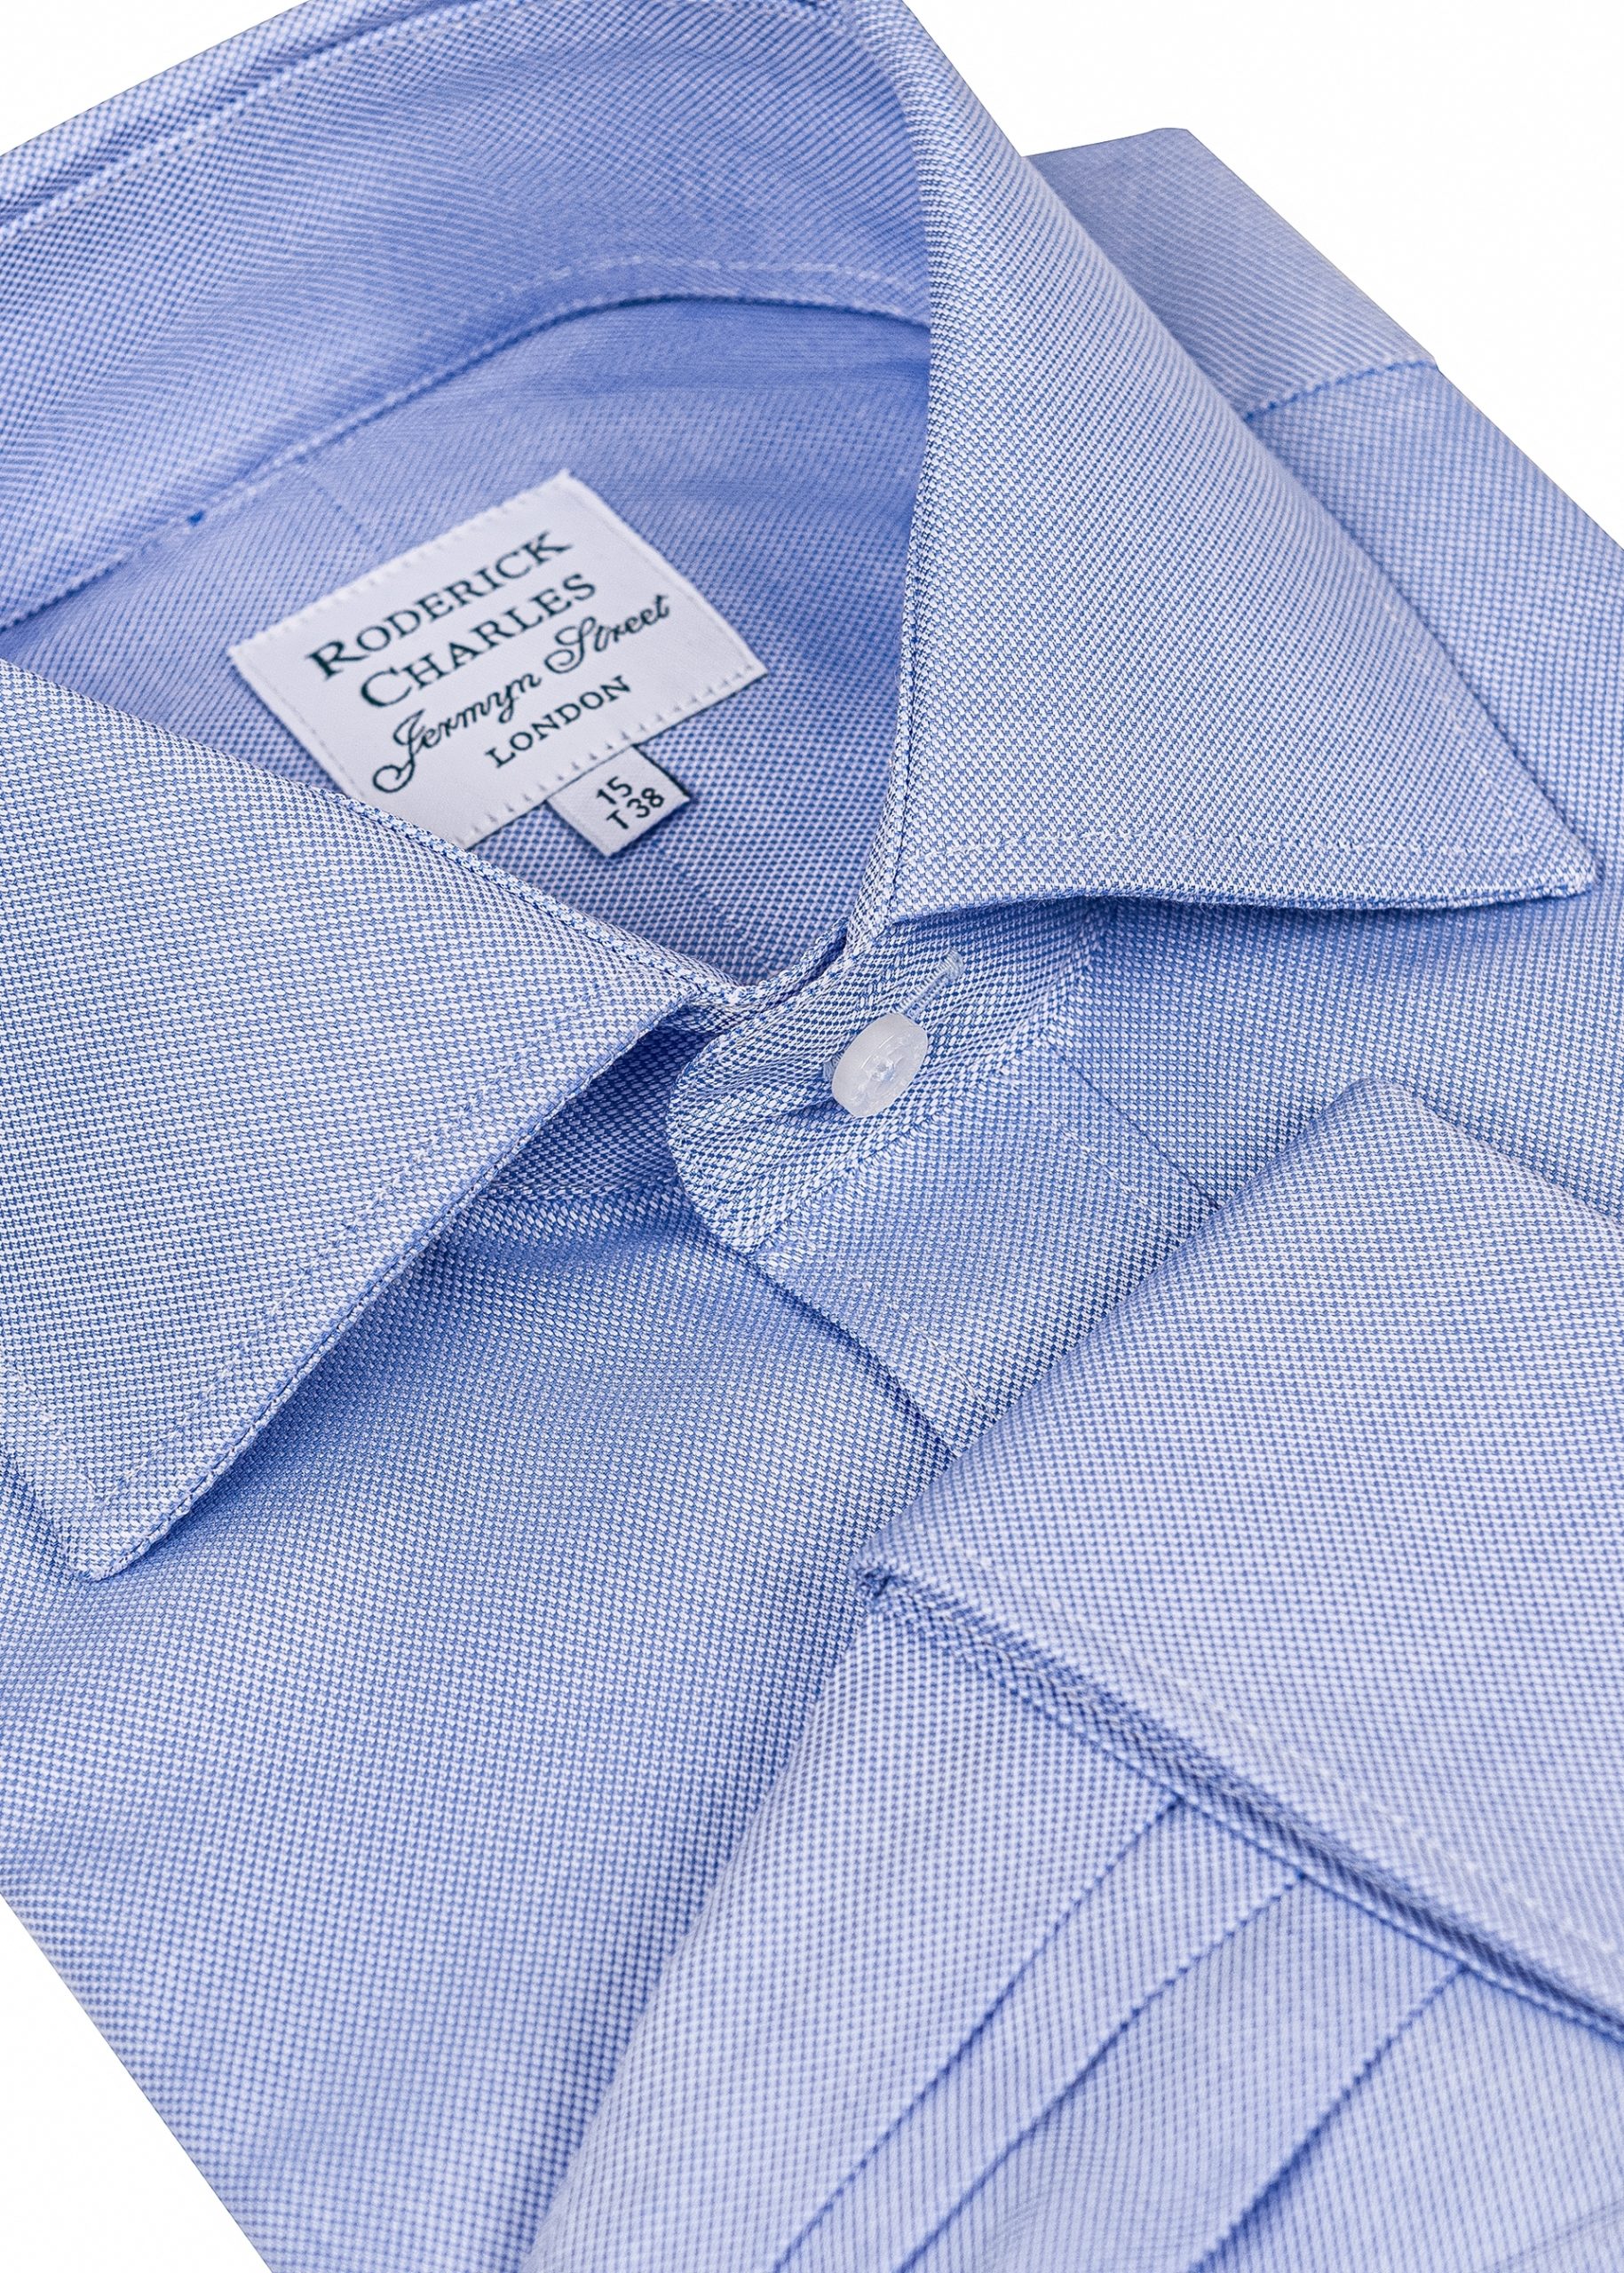 Semi cut away collar shirt in blue